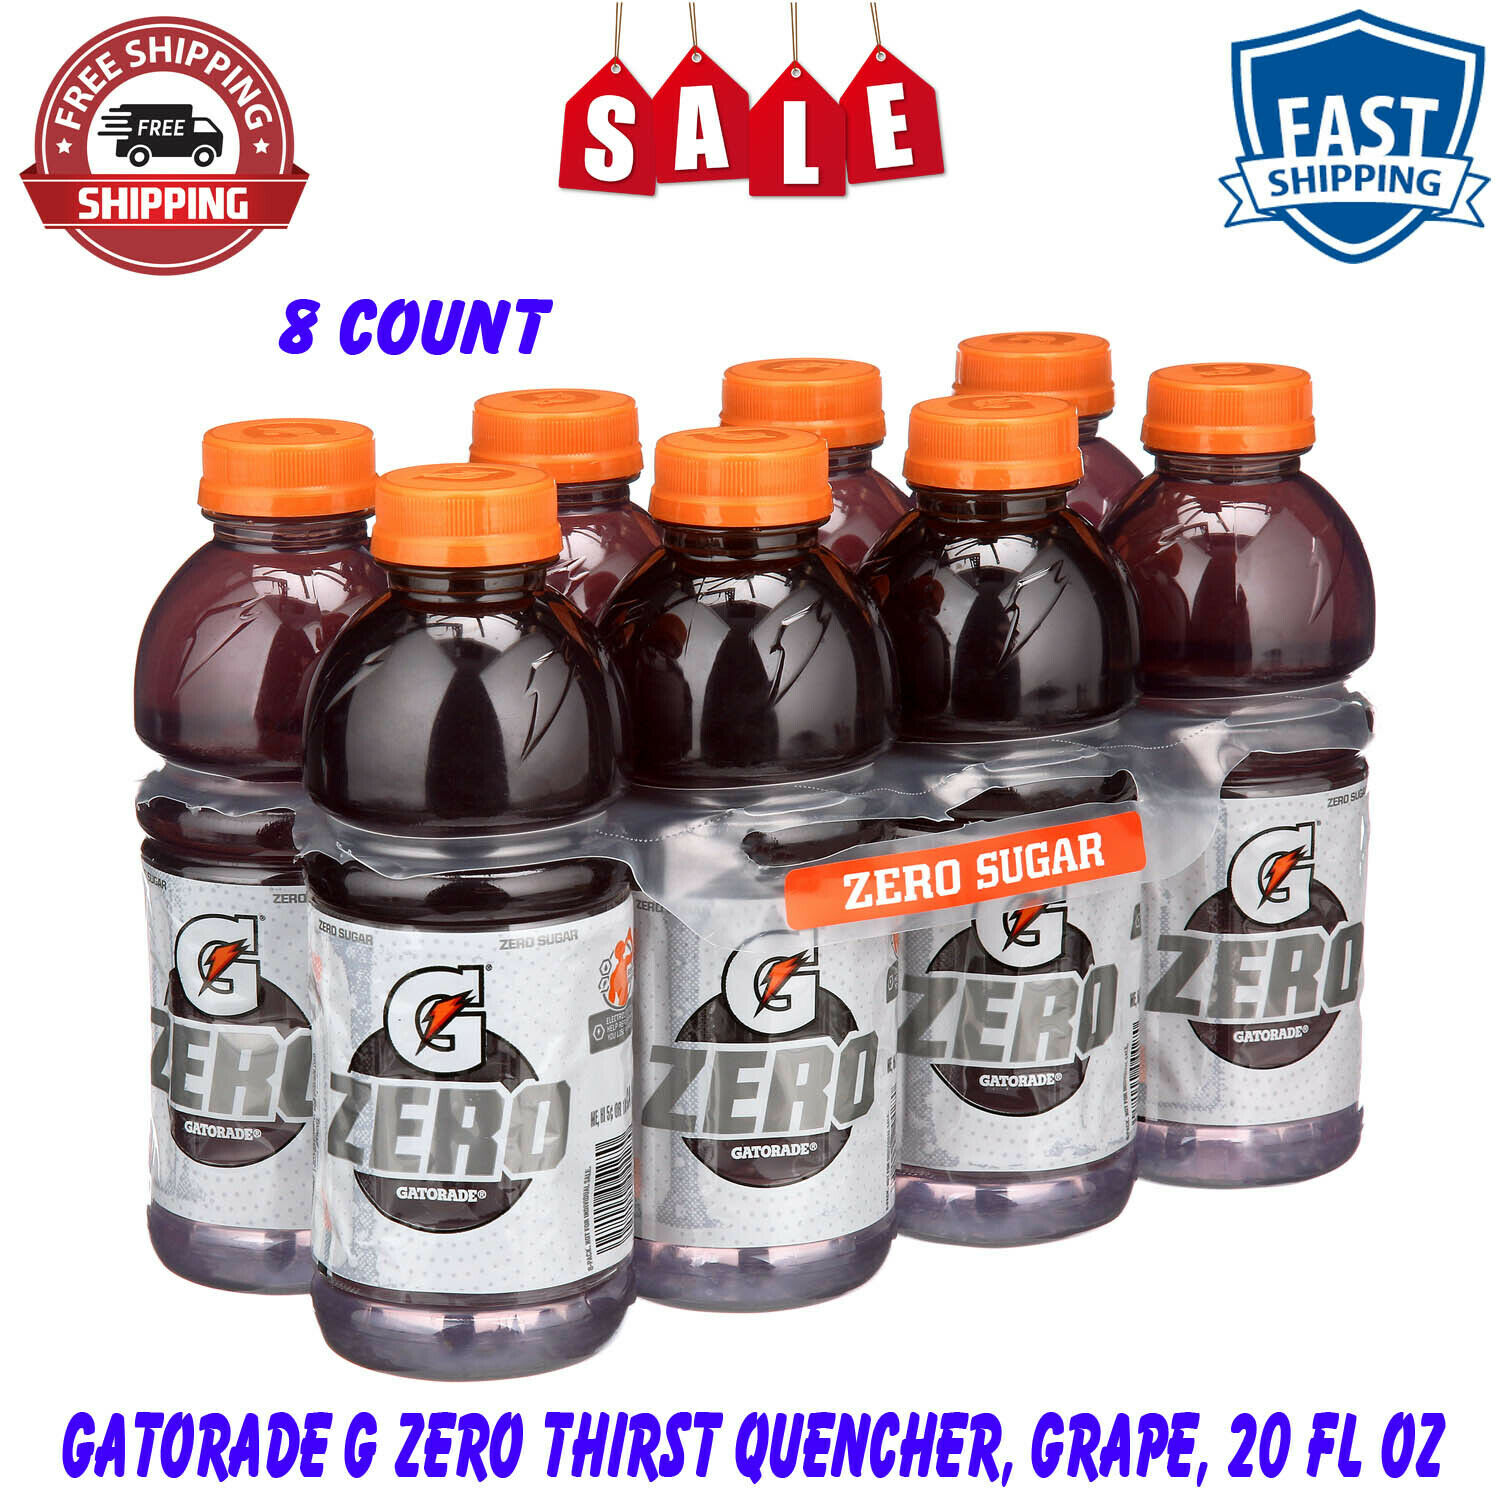 8 Ct Gatorade G Zero Thirst Quencher,grape, Natural Flavor, Sugar Free, 20 Fl Oz